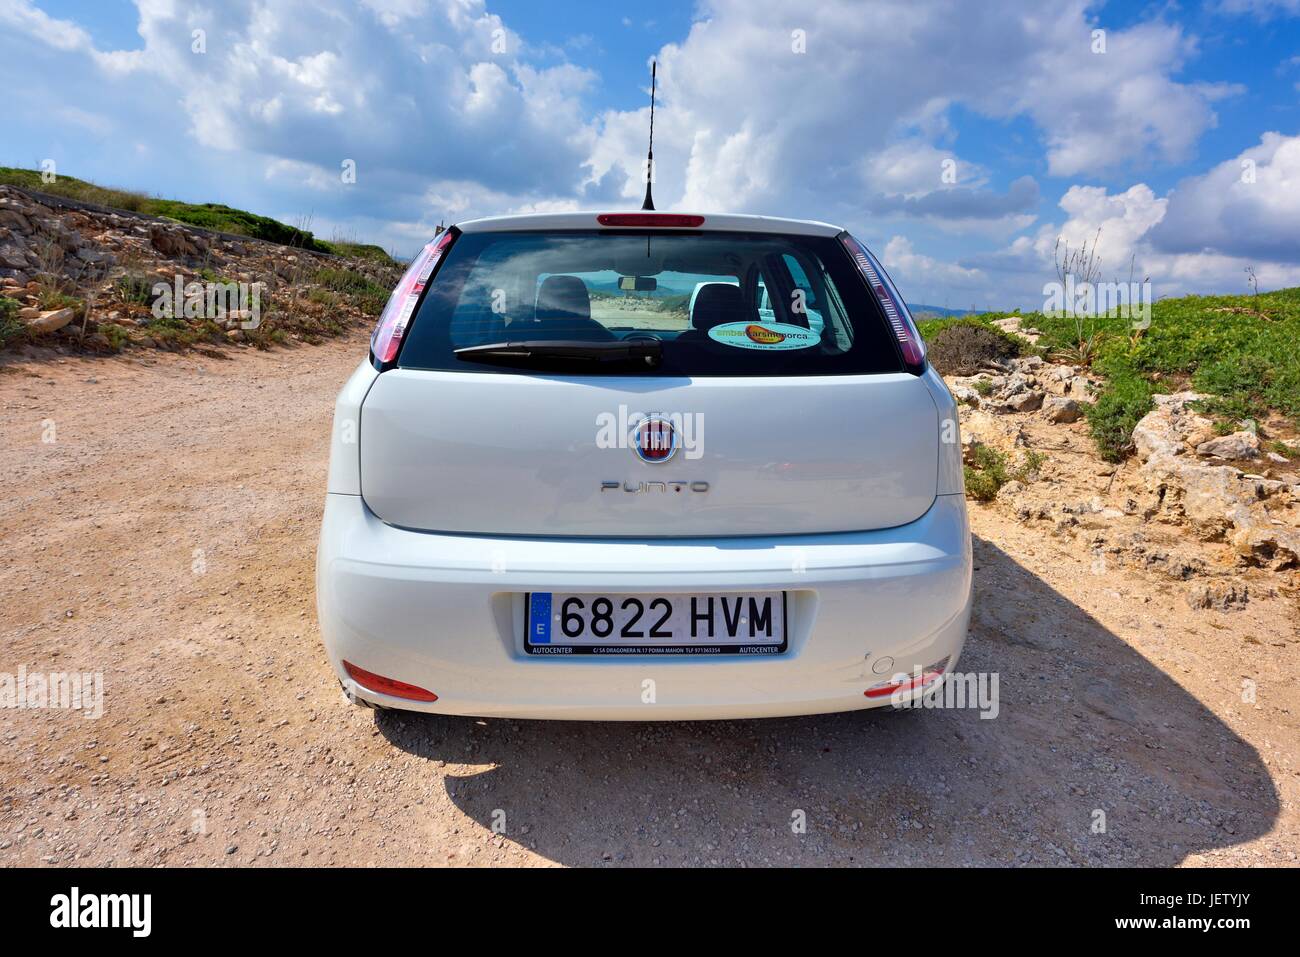 Fiat Punto holiday hire car Stock Photo